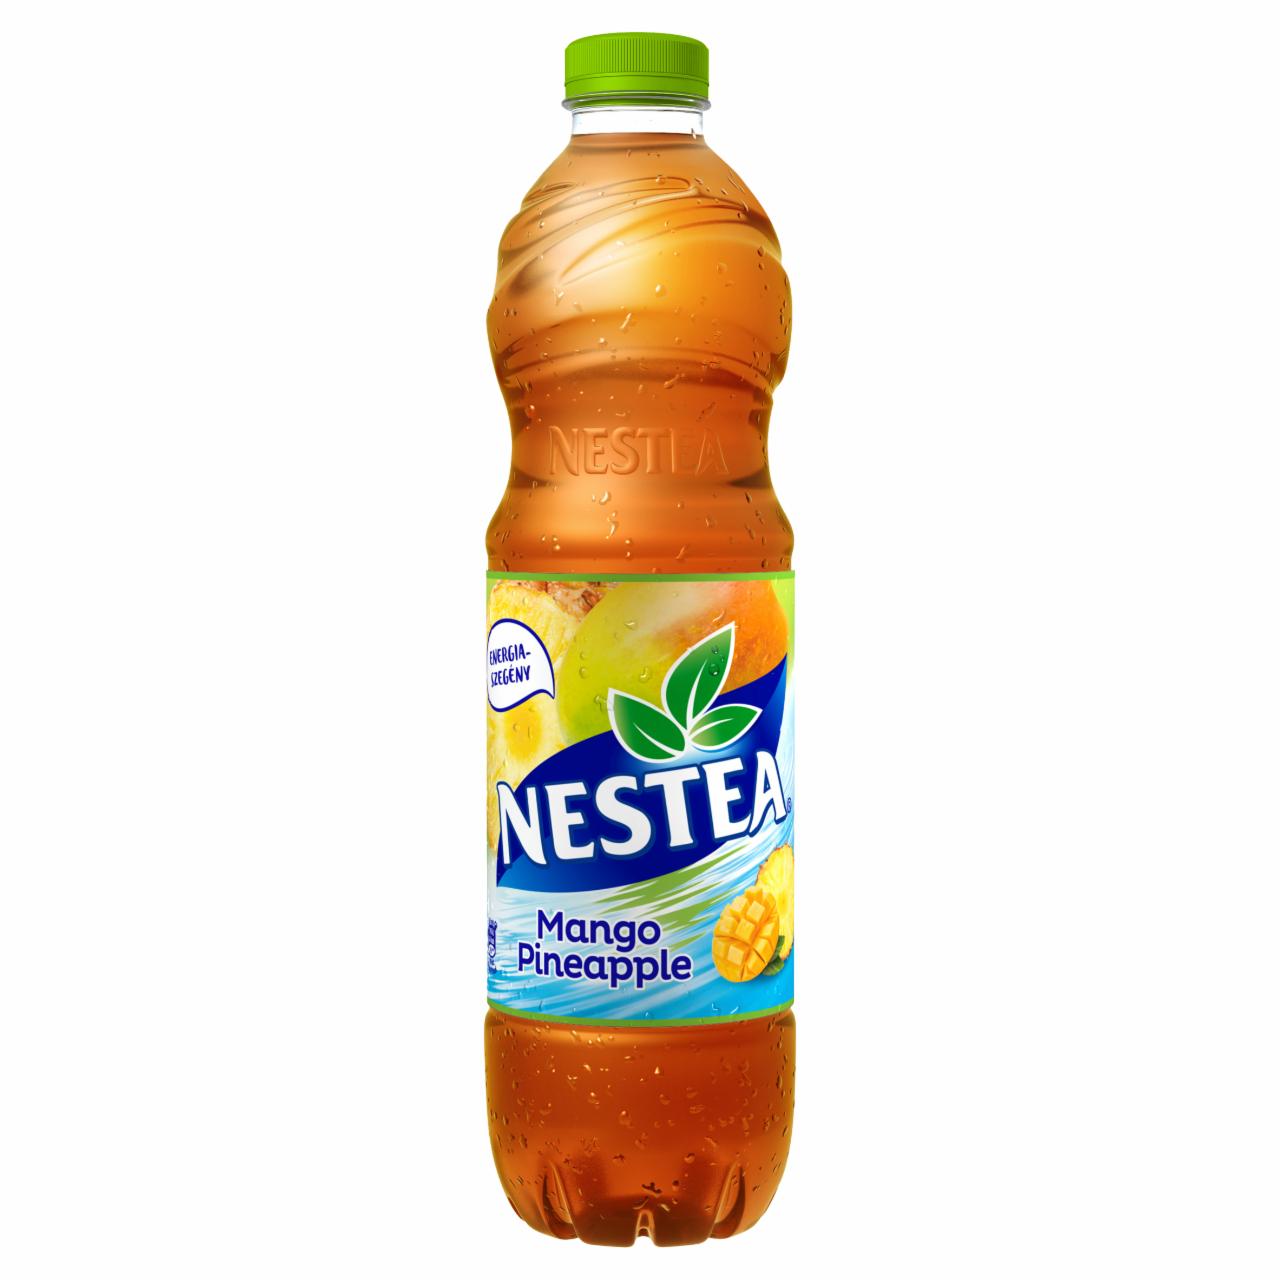 Képek - Nestea mangó-ananász ízű tea üdítőital, cukrokkal és édesítőszerrel 1,5 l